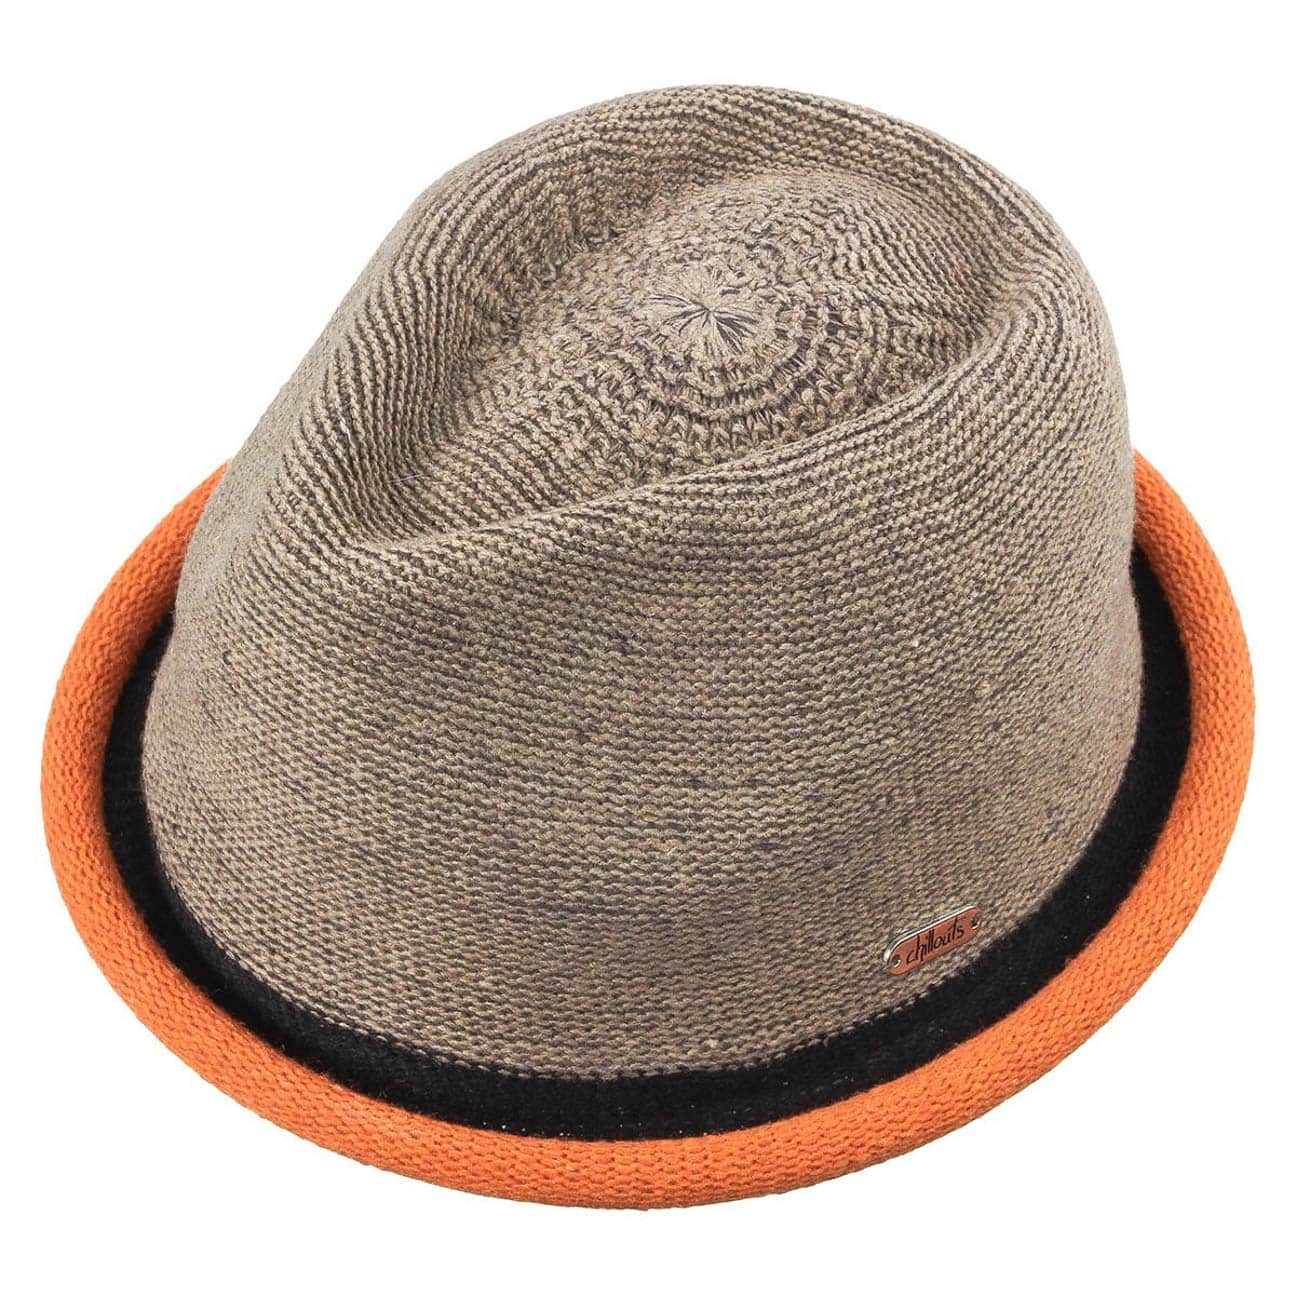 CHILLOUTS Boston Hat